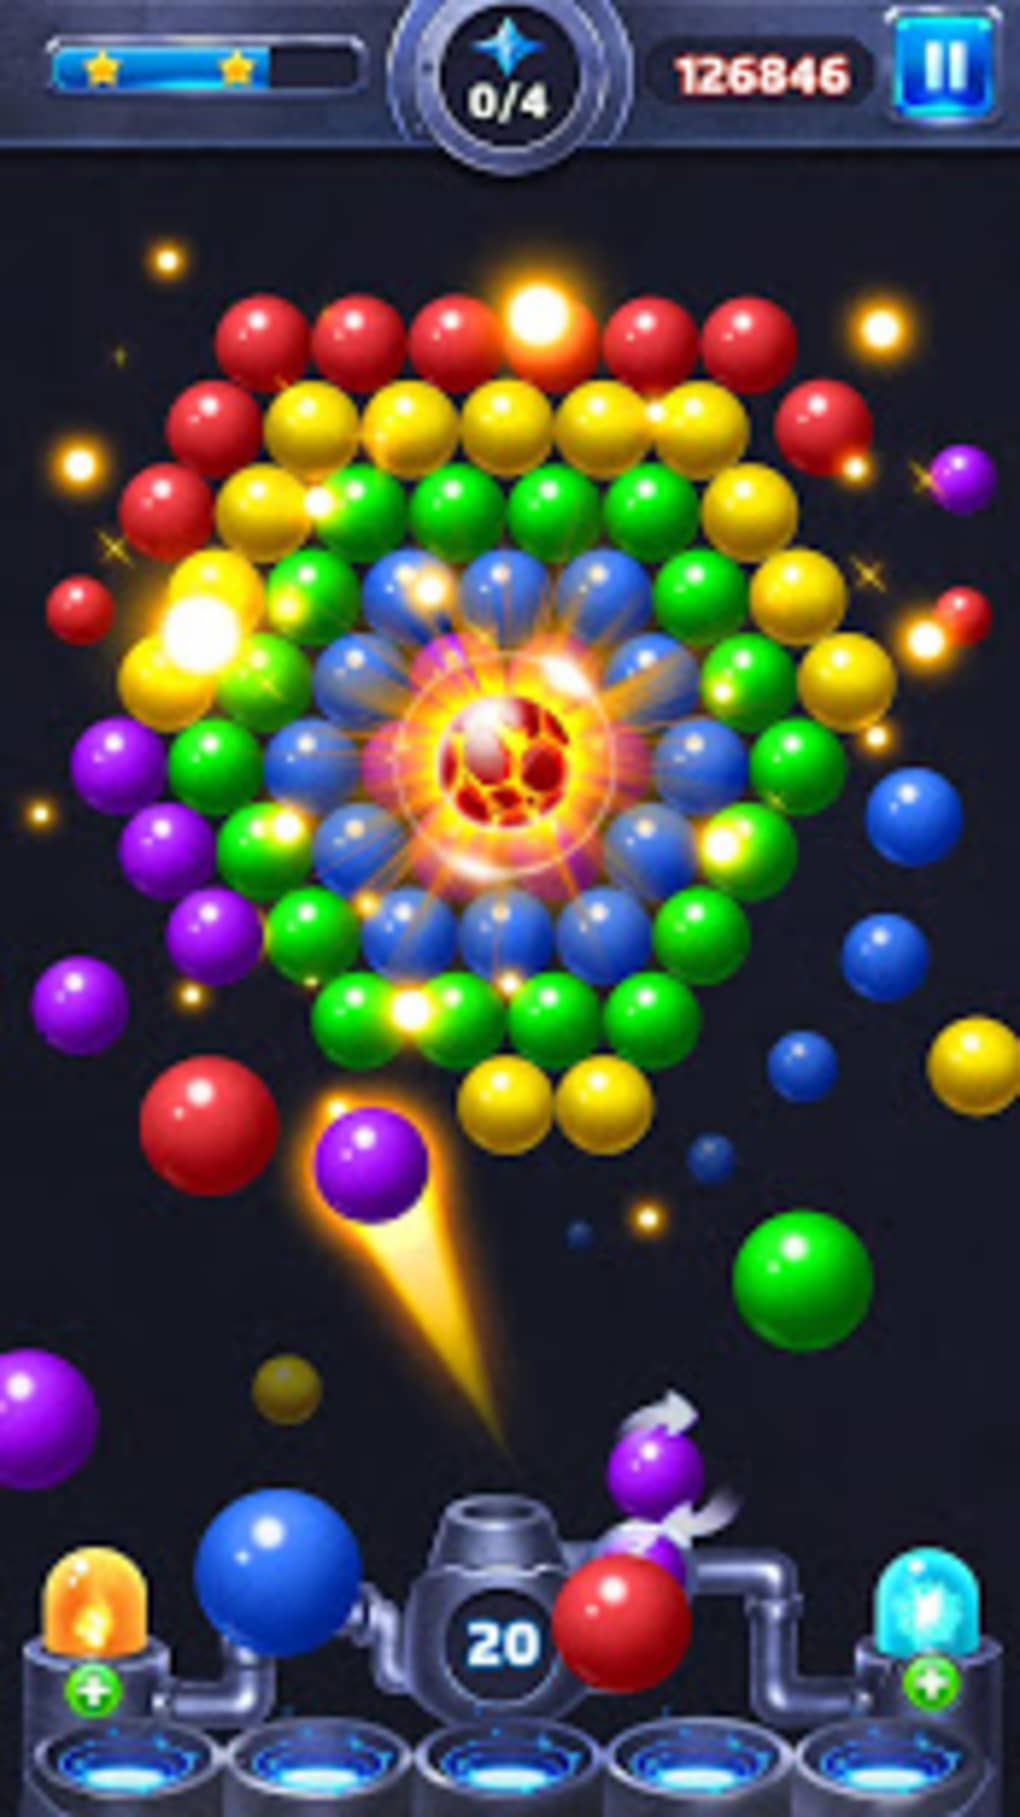 Download do APK de Jogo Clássico Bubble Shooter para Android